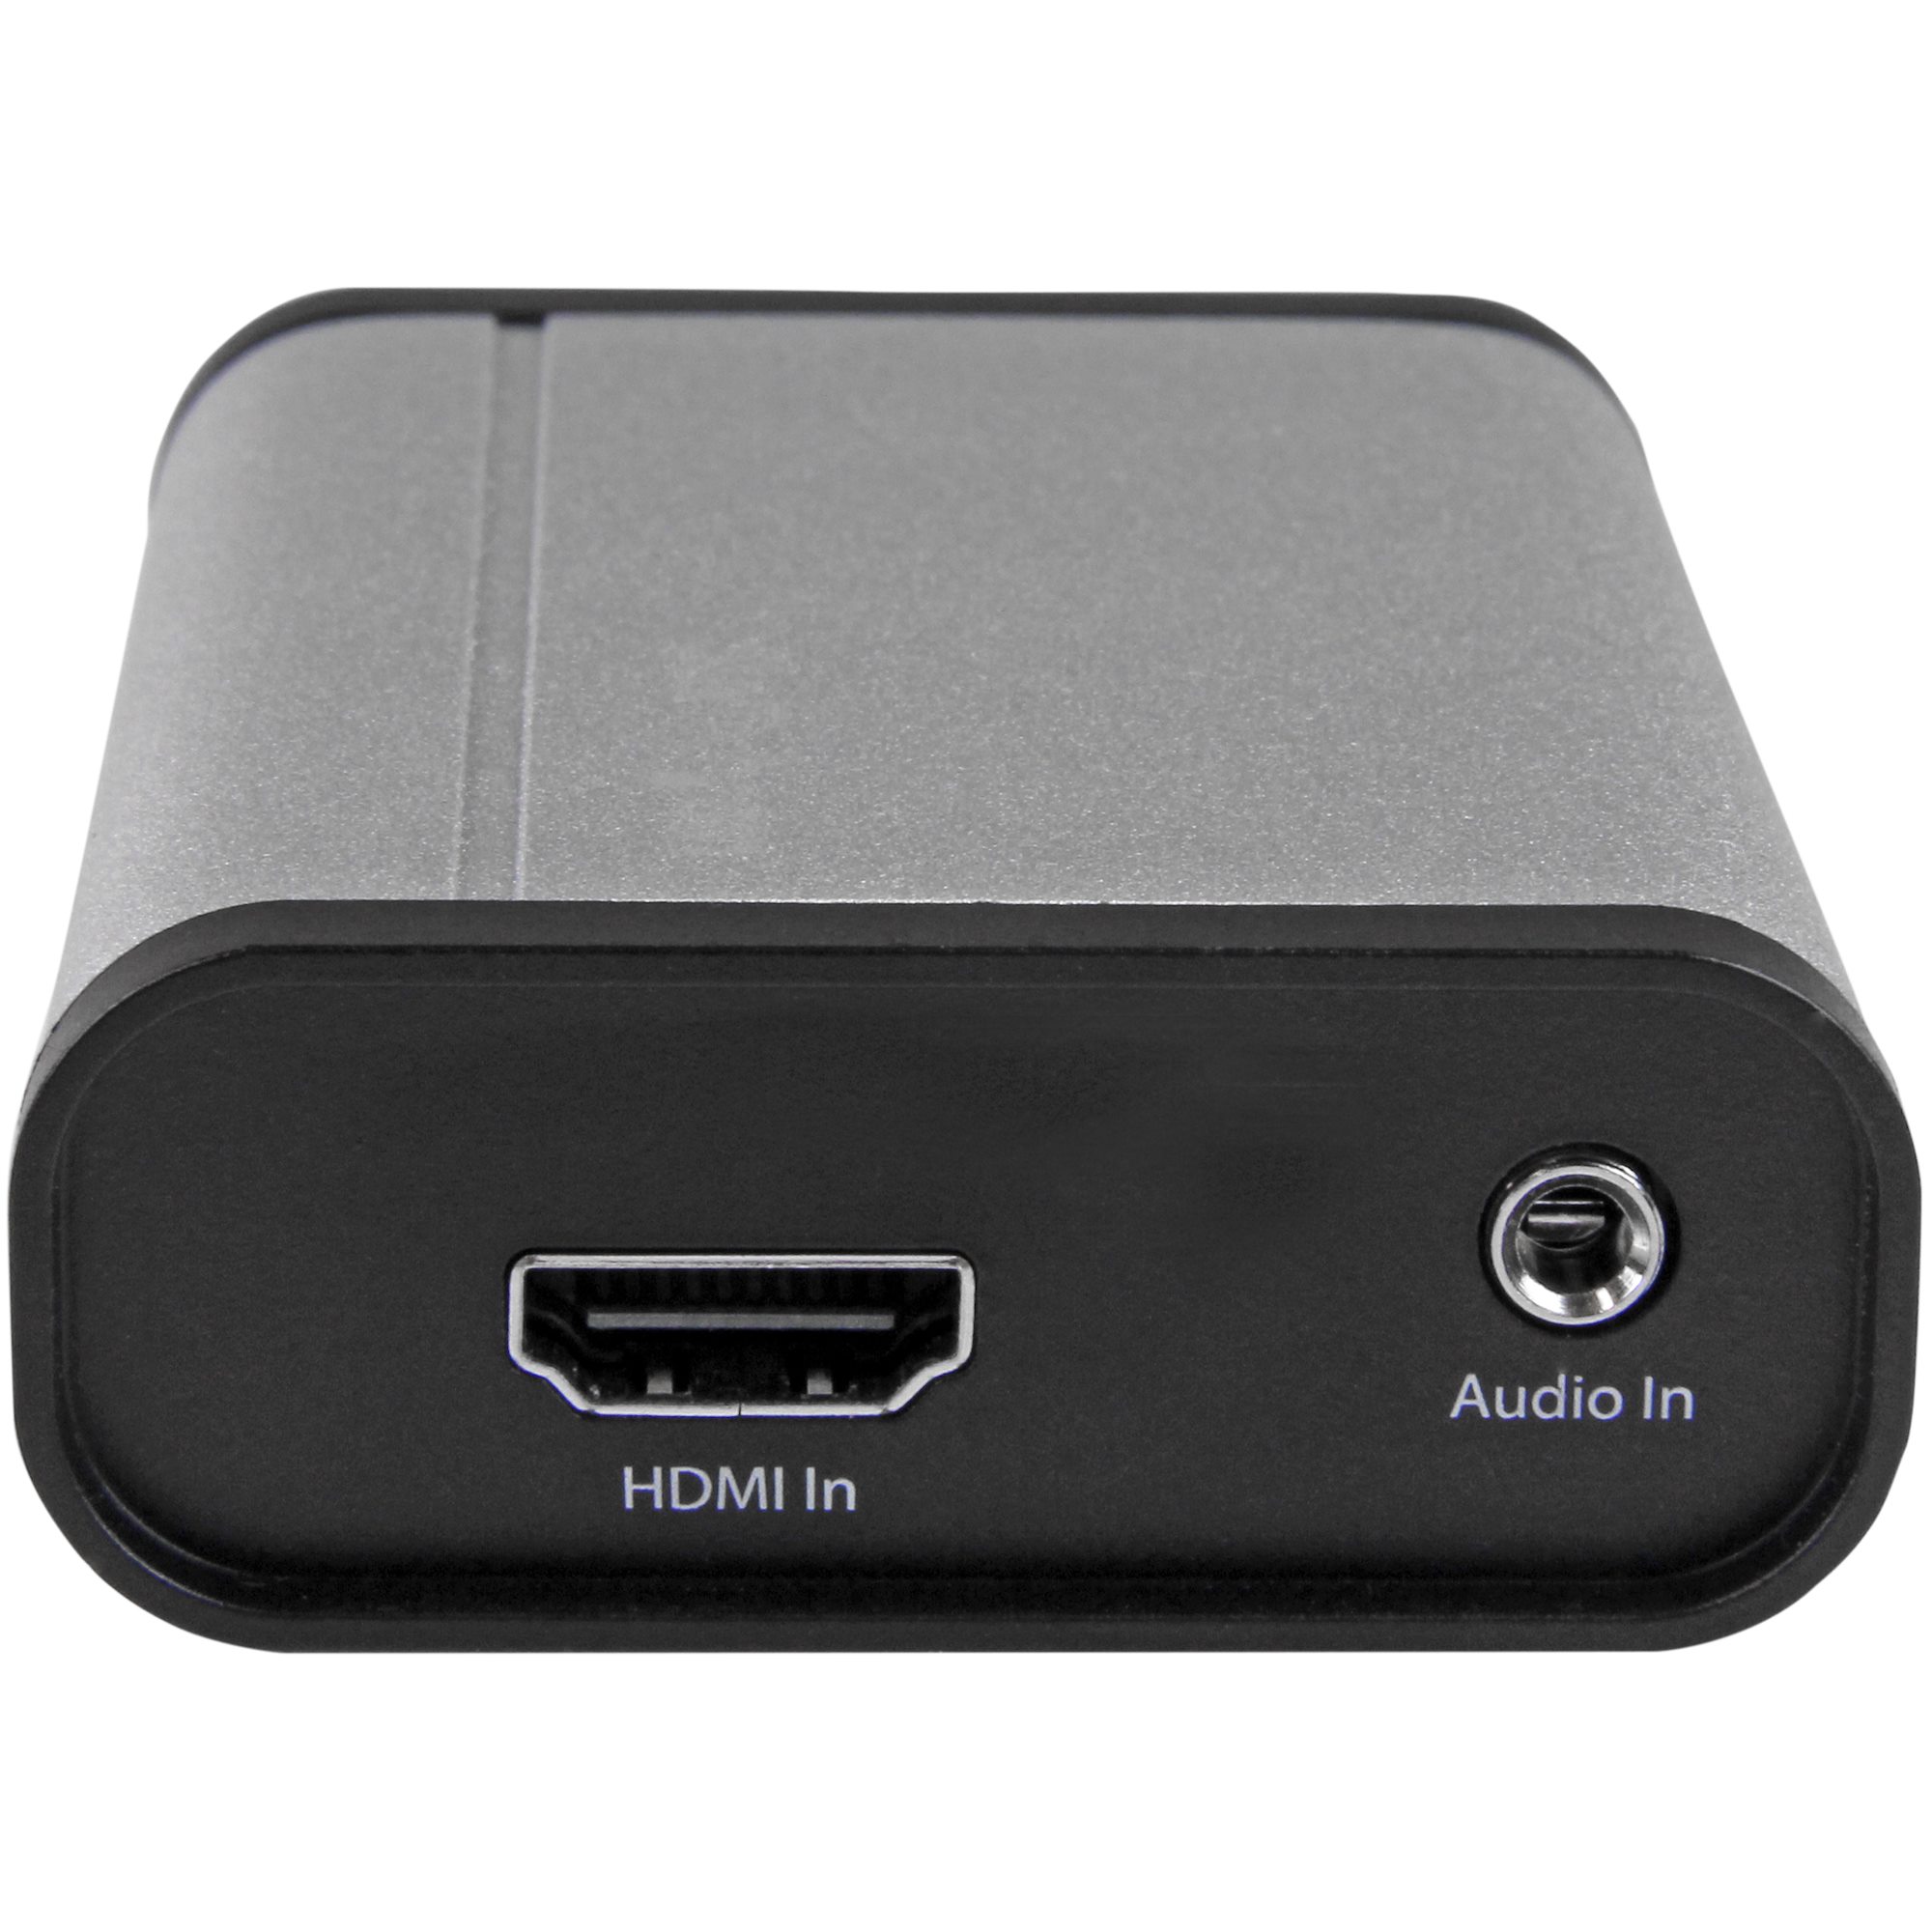 Capturadora de Vídeo USB 3.0 a HDMI, DVI, VGA y Vídeo por Componentes -  Grabador de Vídeo HD 1080p 60fps